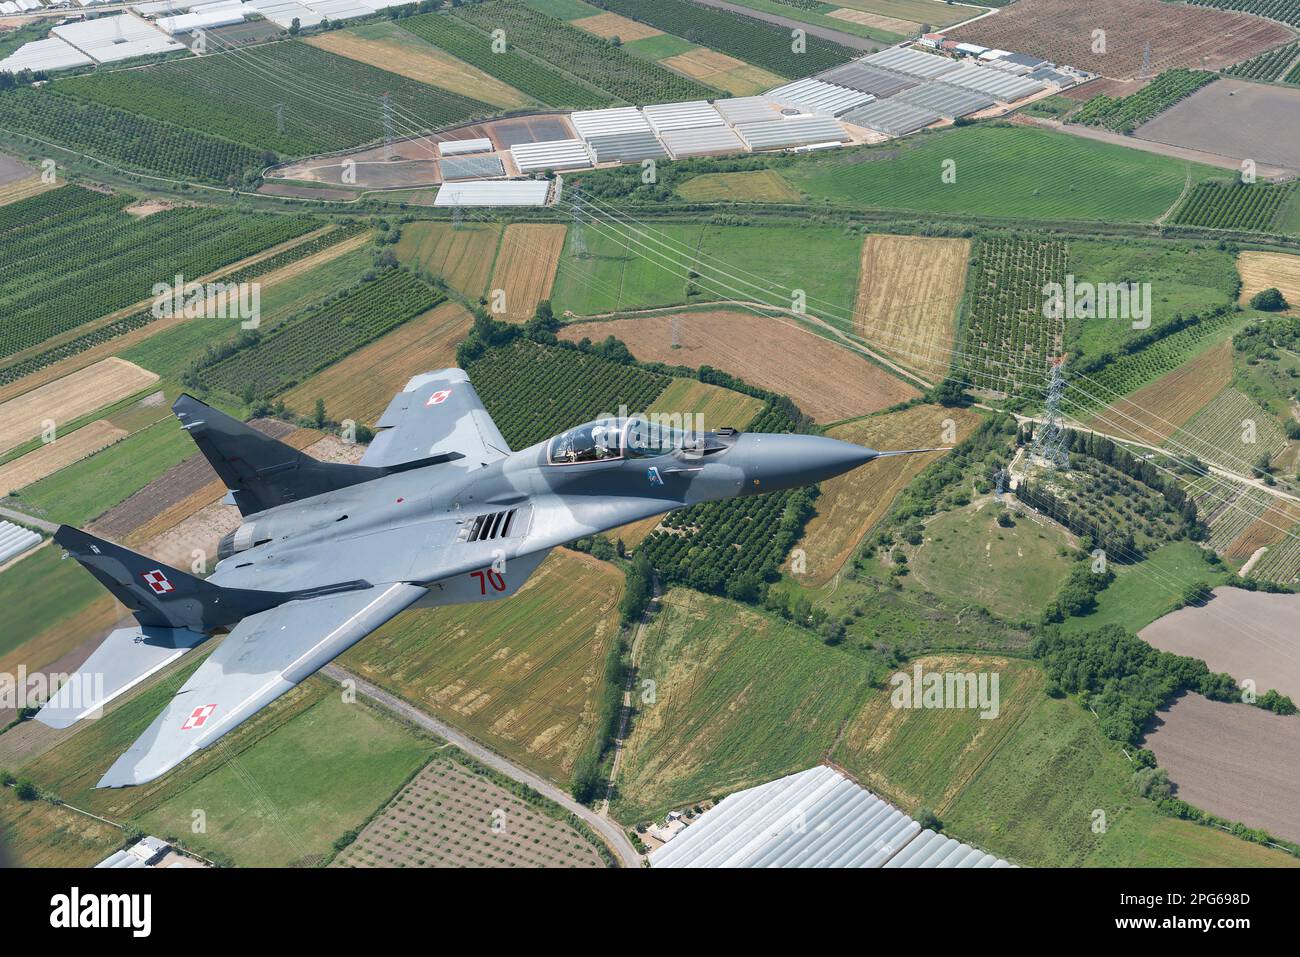 Der polnische Air Force Mig-29 Fighter Jet fliegt während eines Air-to-Air-Fluges über der türkischen Landschaft Stockfoto